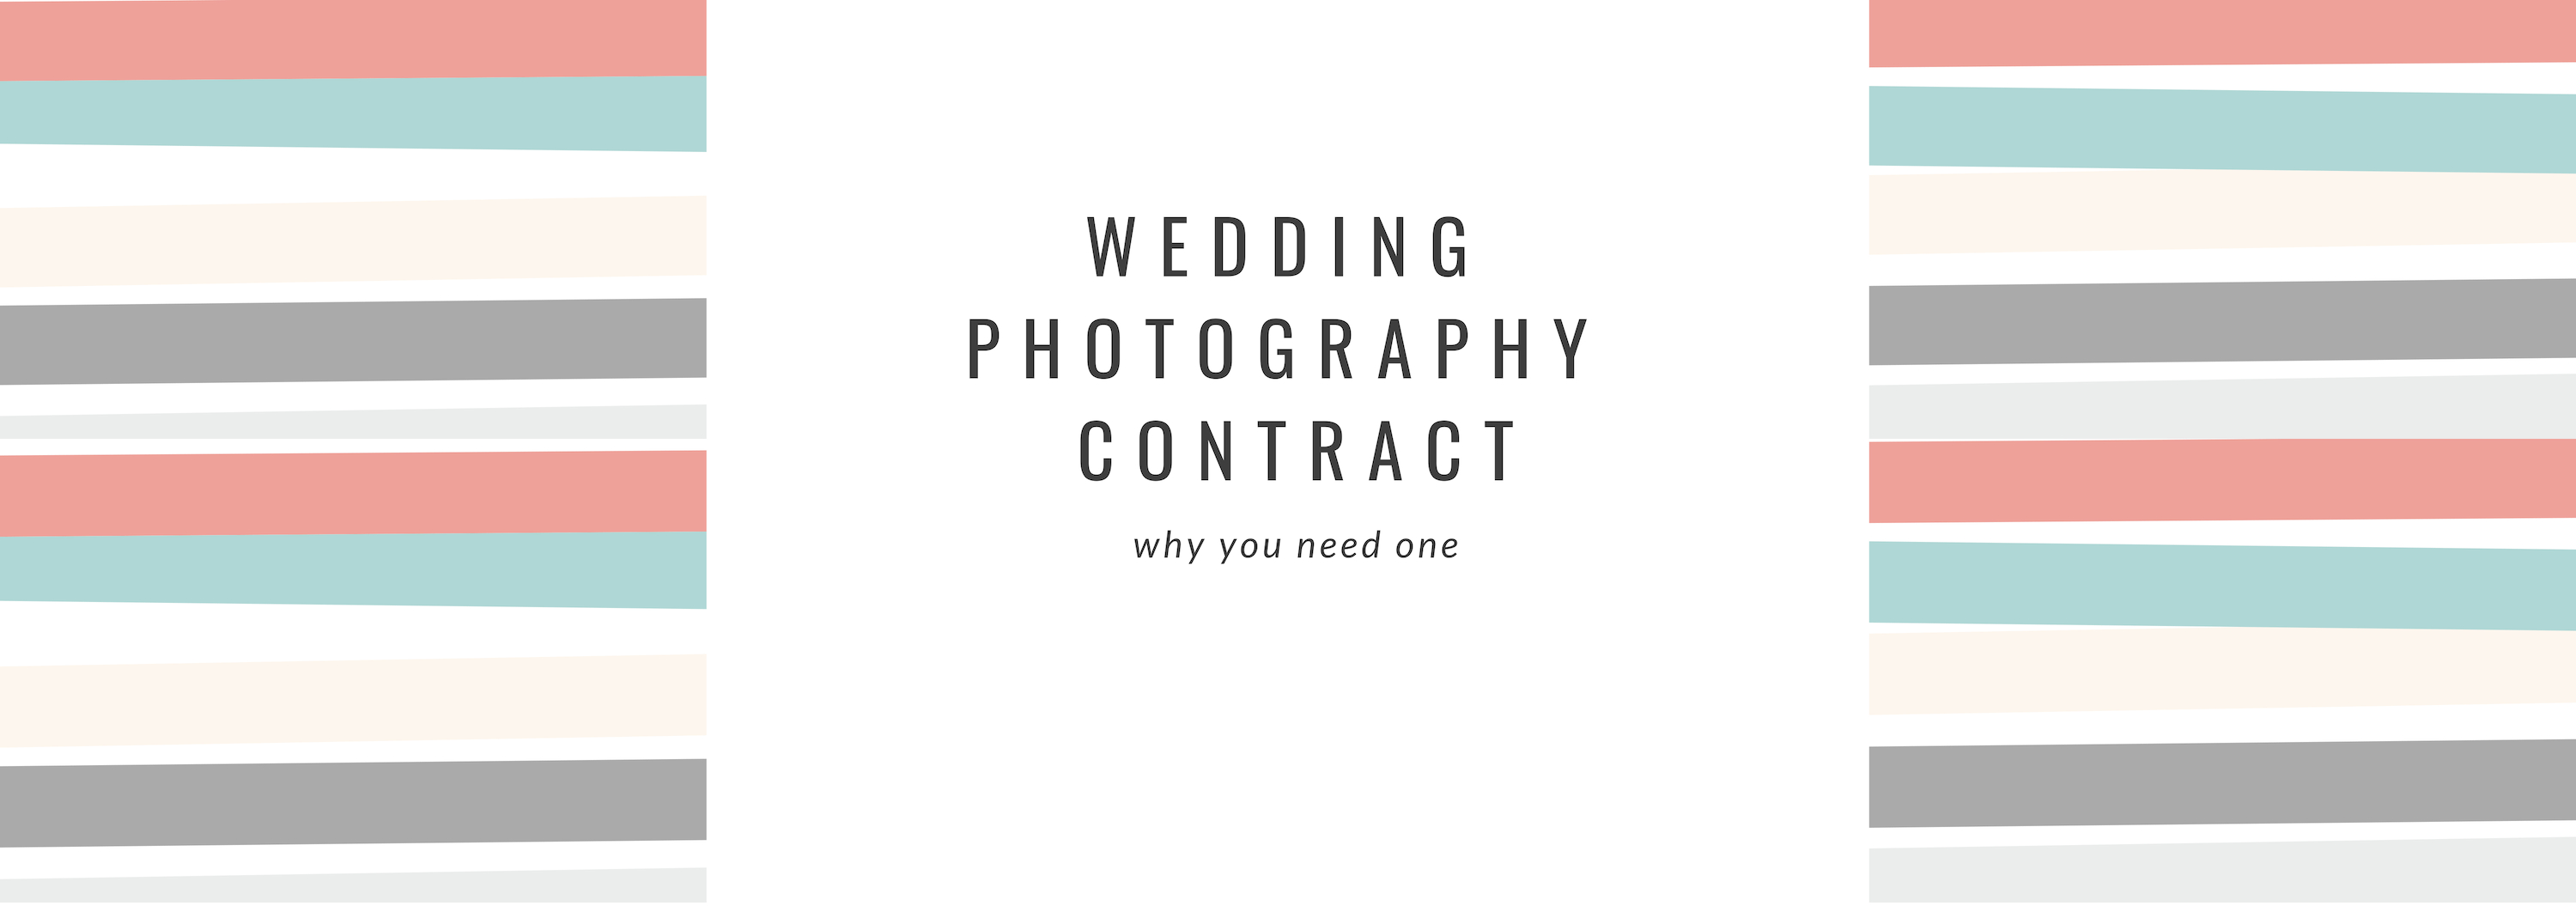 Wedding Photography Contract